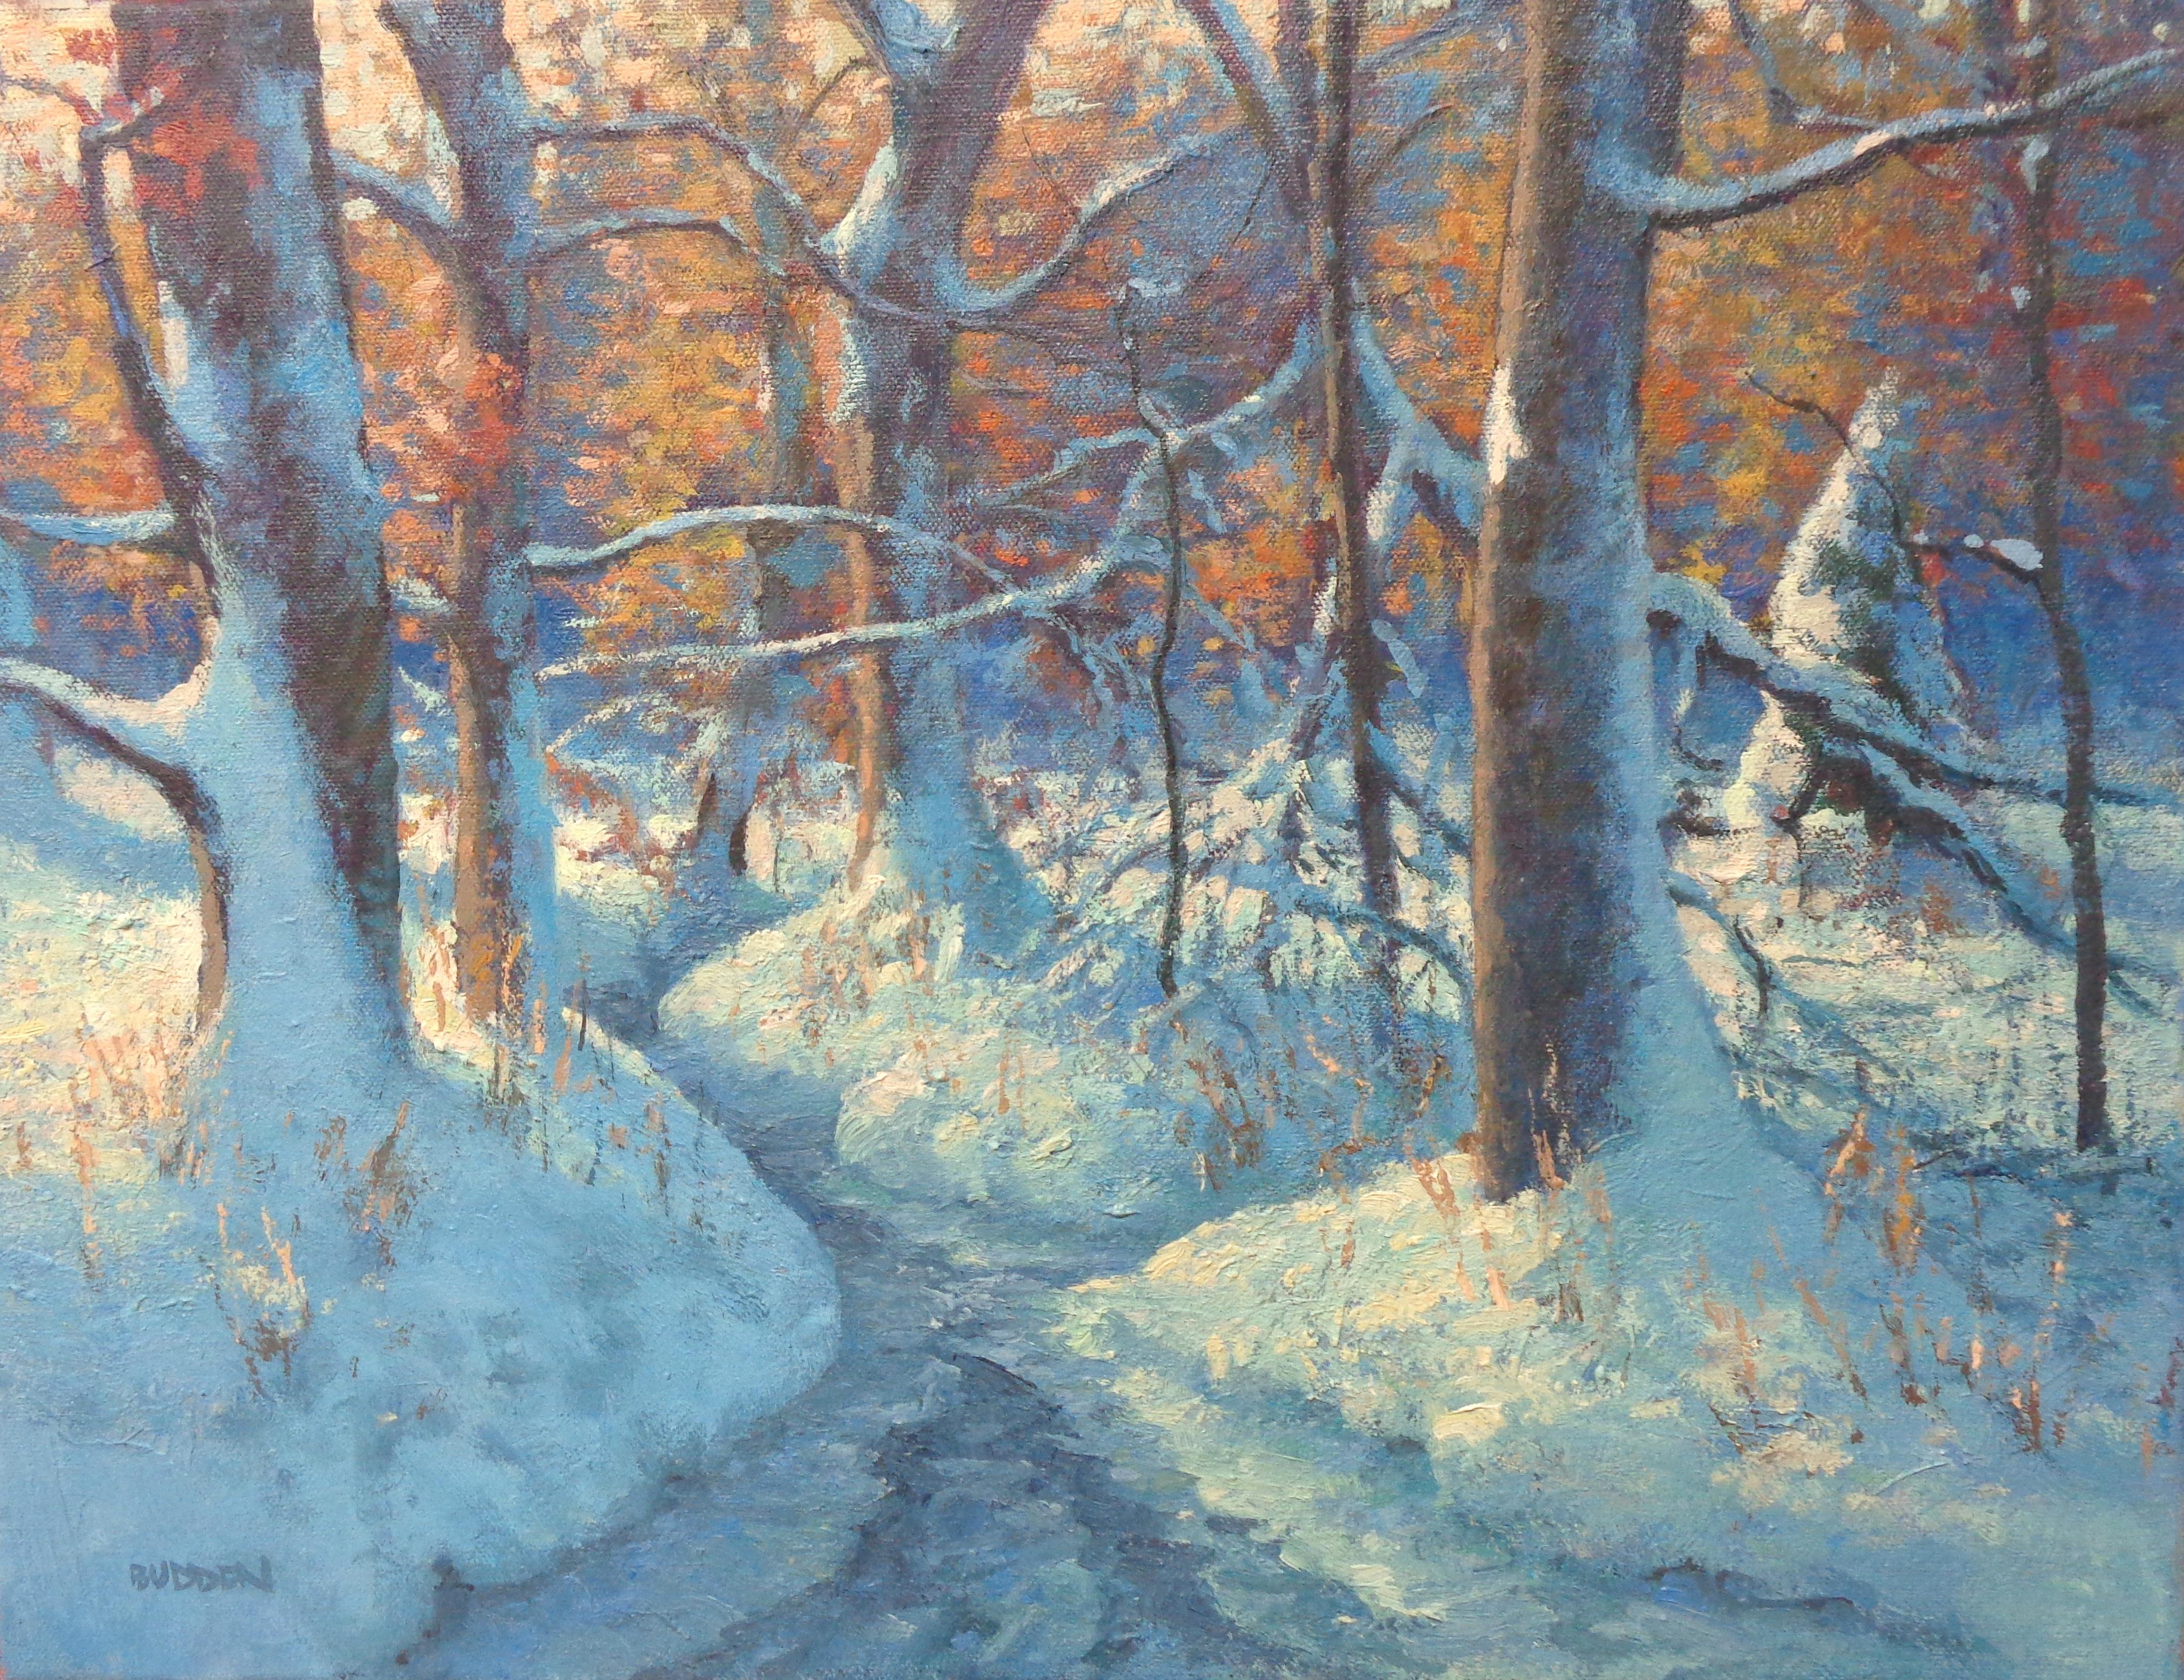 A. Winter Wonderland
Öl/Leinwand 14 x 18 ungerahmt
Ein Ölgemälde auf Leinwand des preisgekrönten zeitgenössischen Künstlers Michael Budden, das eine wunderschön beleuchtete winterliche Waldszene und einen Bach zeigt. Das Bild misst ungerahmt 14 x